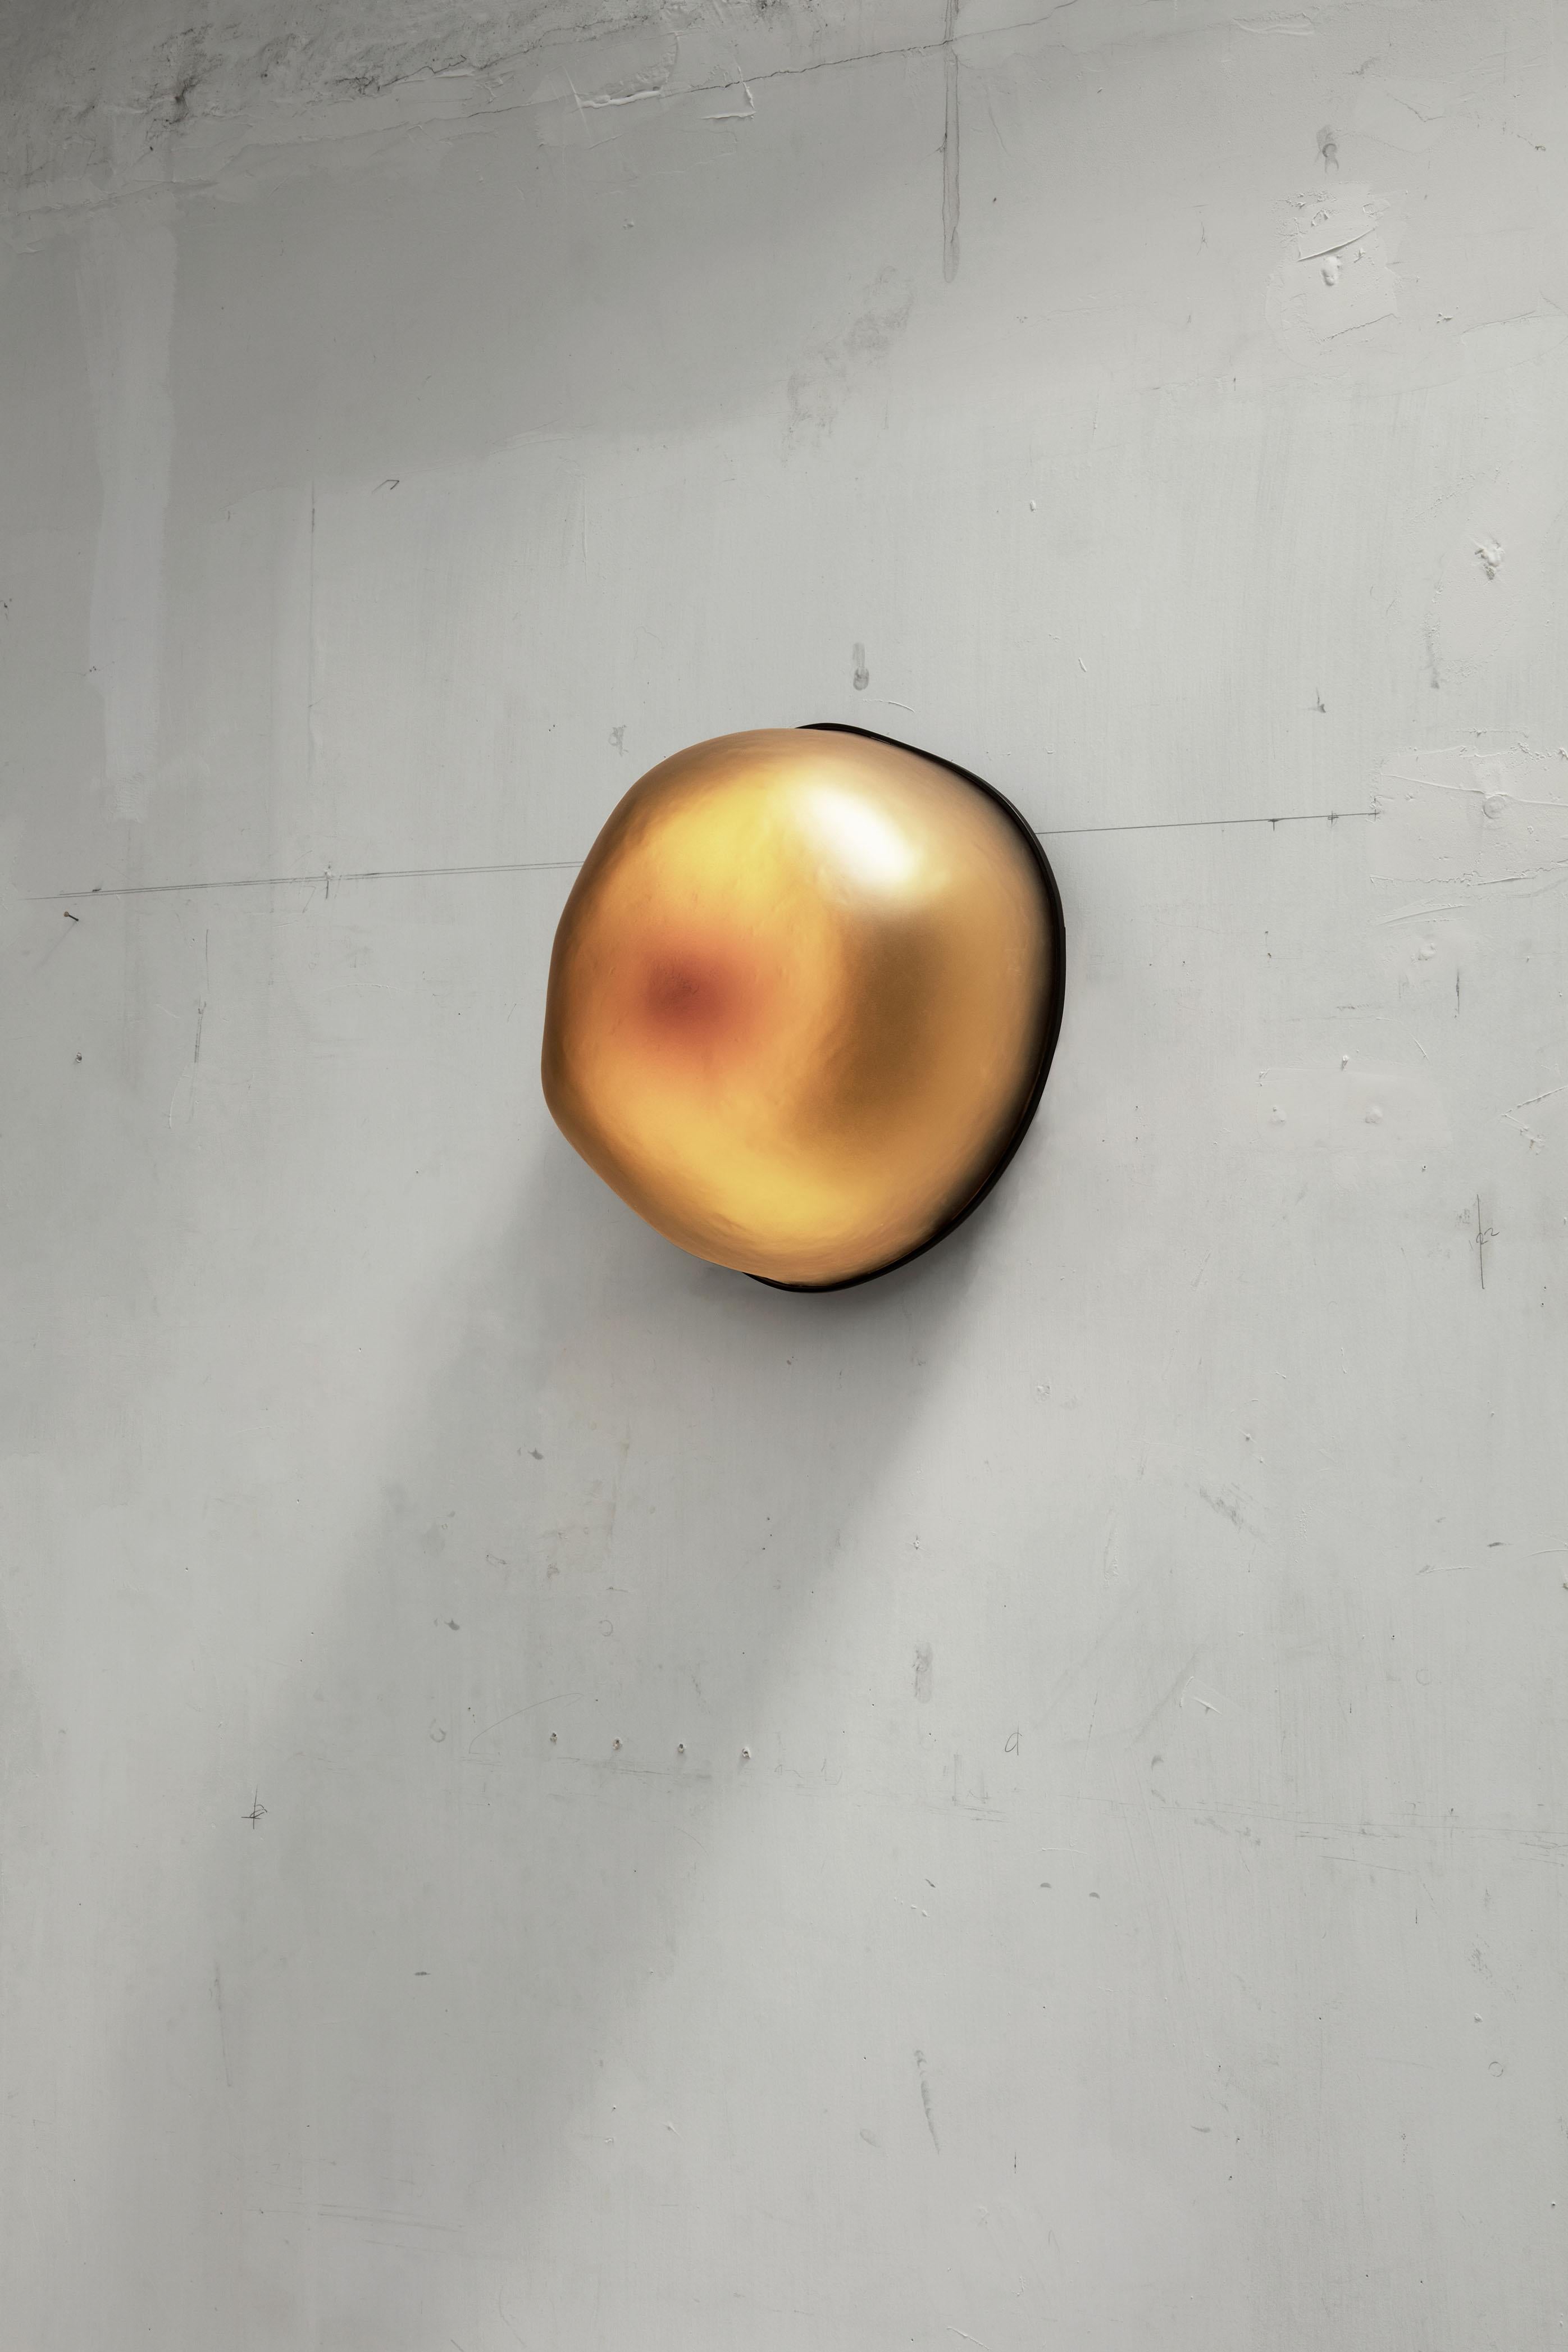 EWE Studio hat in Zusammenarbeit mit Nouvel Limited eine goldene Sonderedition von Magma-Leuchten für Design produziert. Der Prozess begann mit der Herstellung von Formen in verschiedenen Größen und Maßstäben, die von örtlichen Steinmetzen von Hand